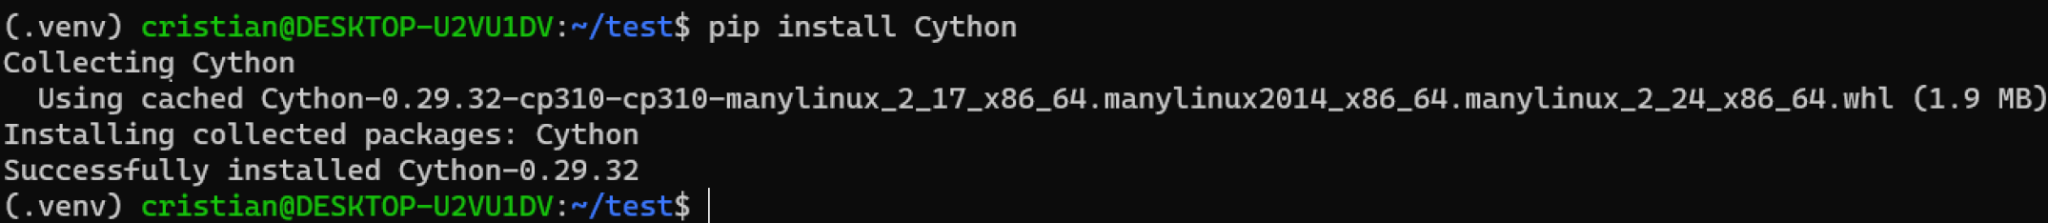 Python Cython instalación pip